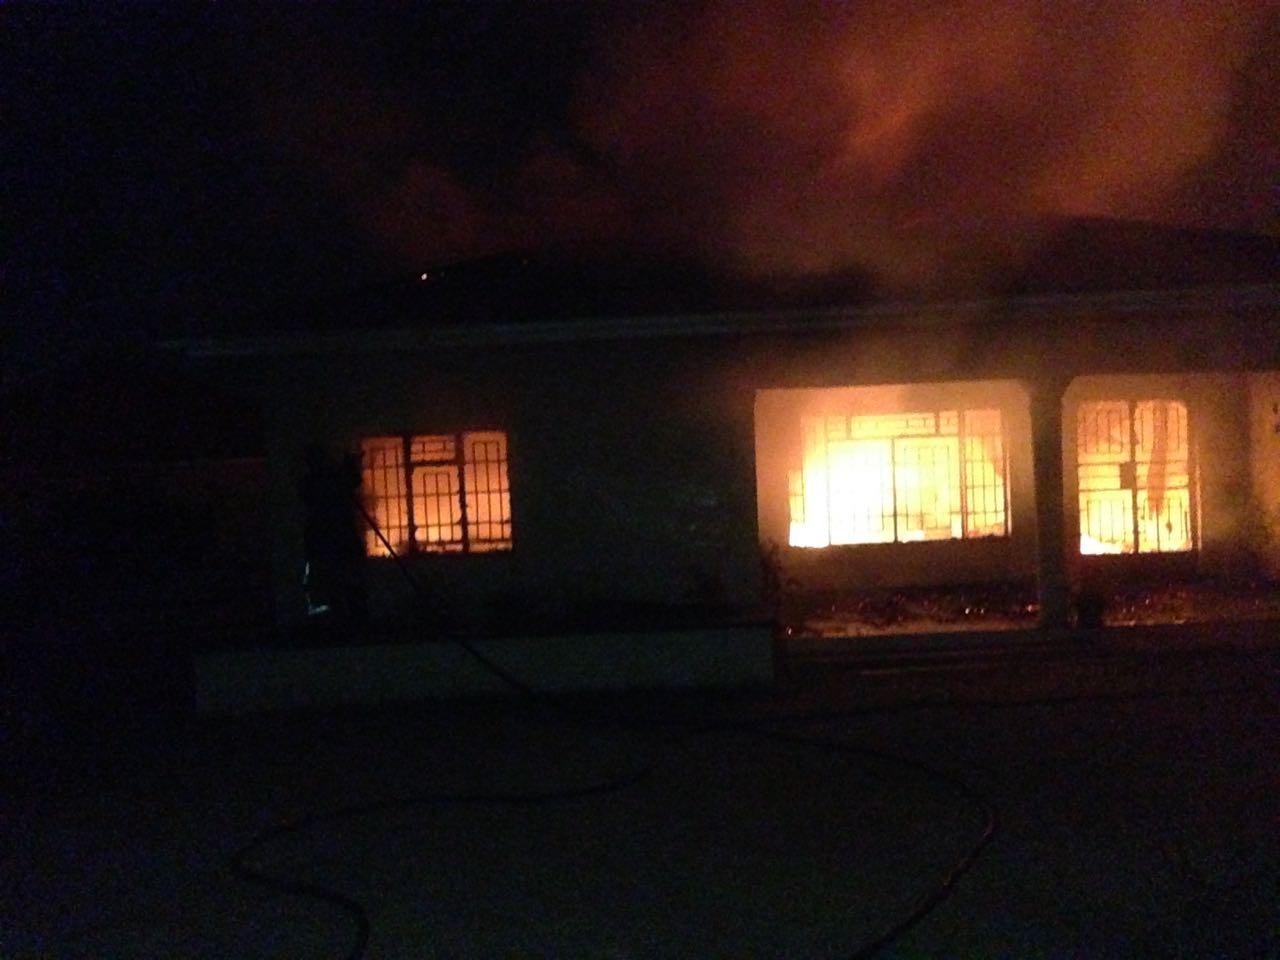 K16 million worth of property damaged in suspected arson in Mzuzu